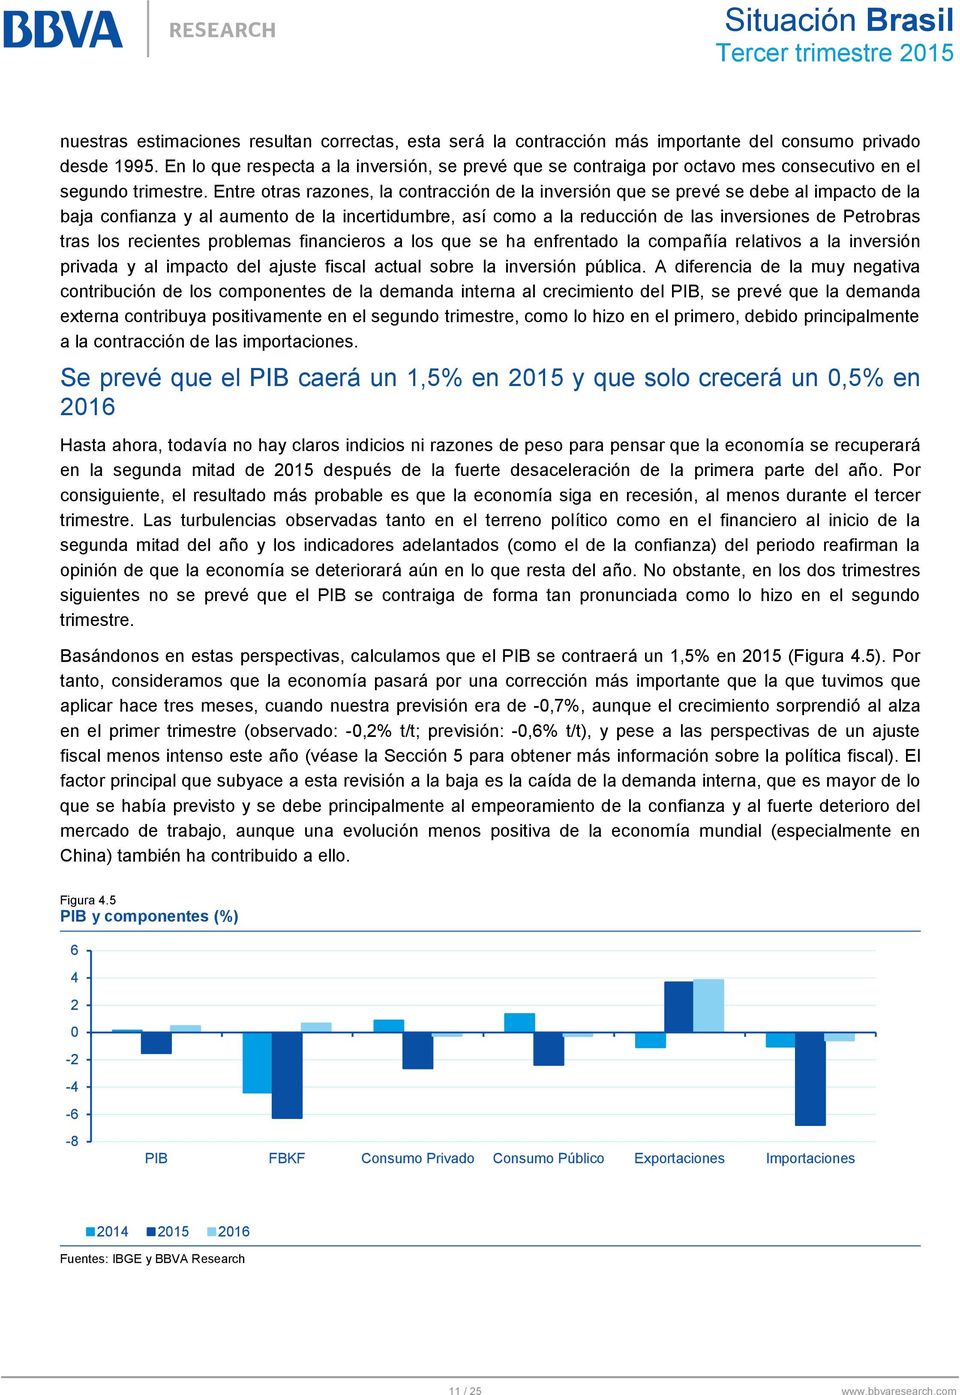 Entre otras razones, la contracción de la inversión que se prevé se debe al impacto de la baja confianza y al aumento de la incertidumbre, así como a la reducción de las inversiones de Petrobras tras